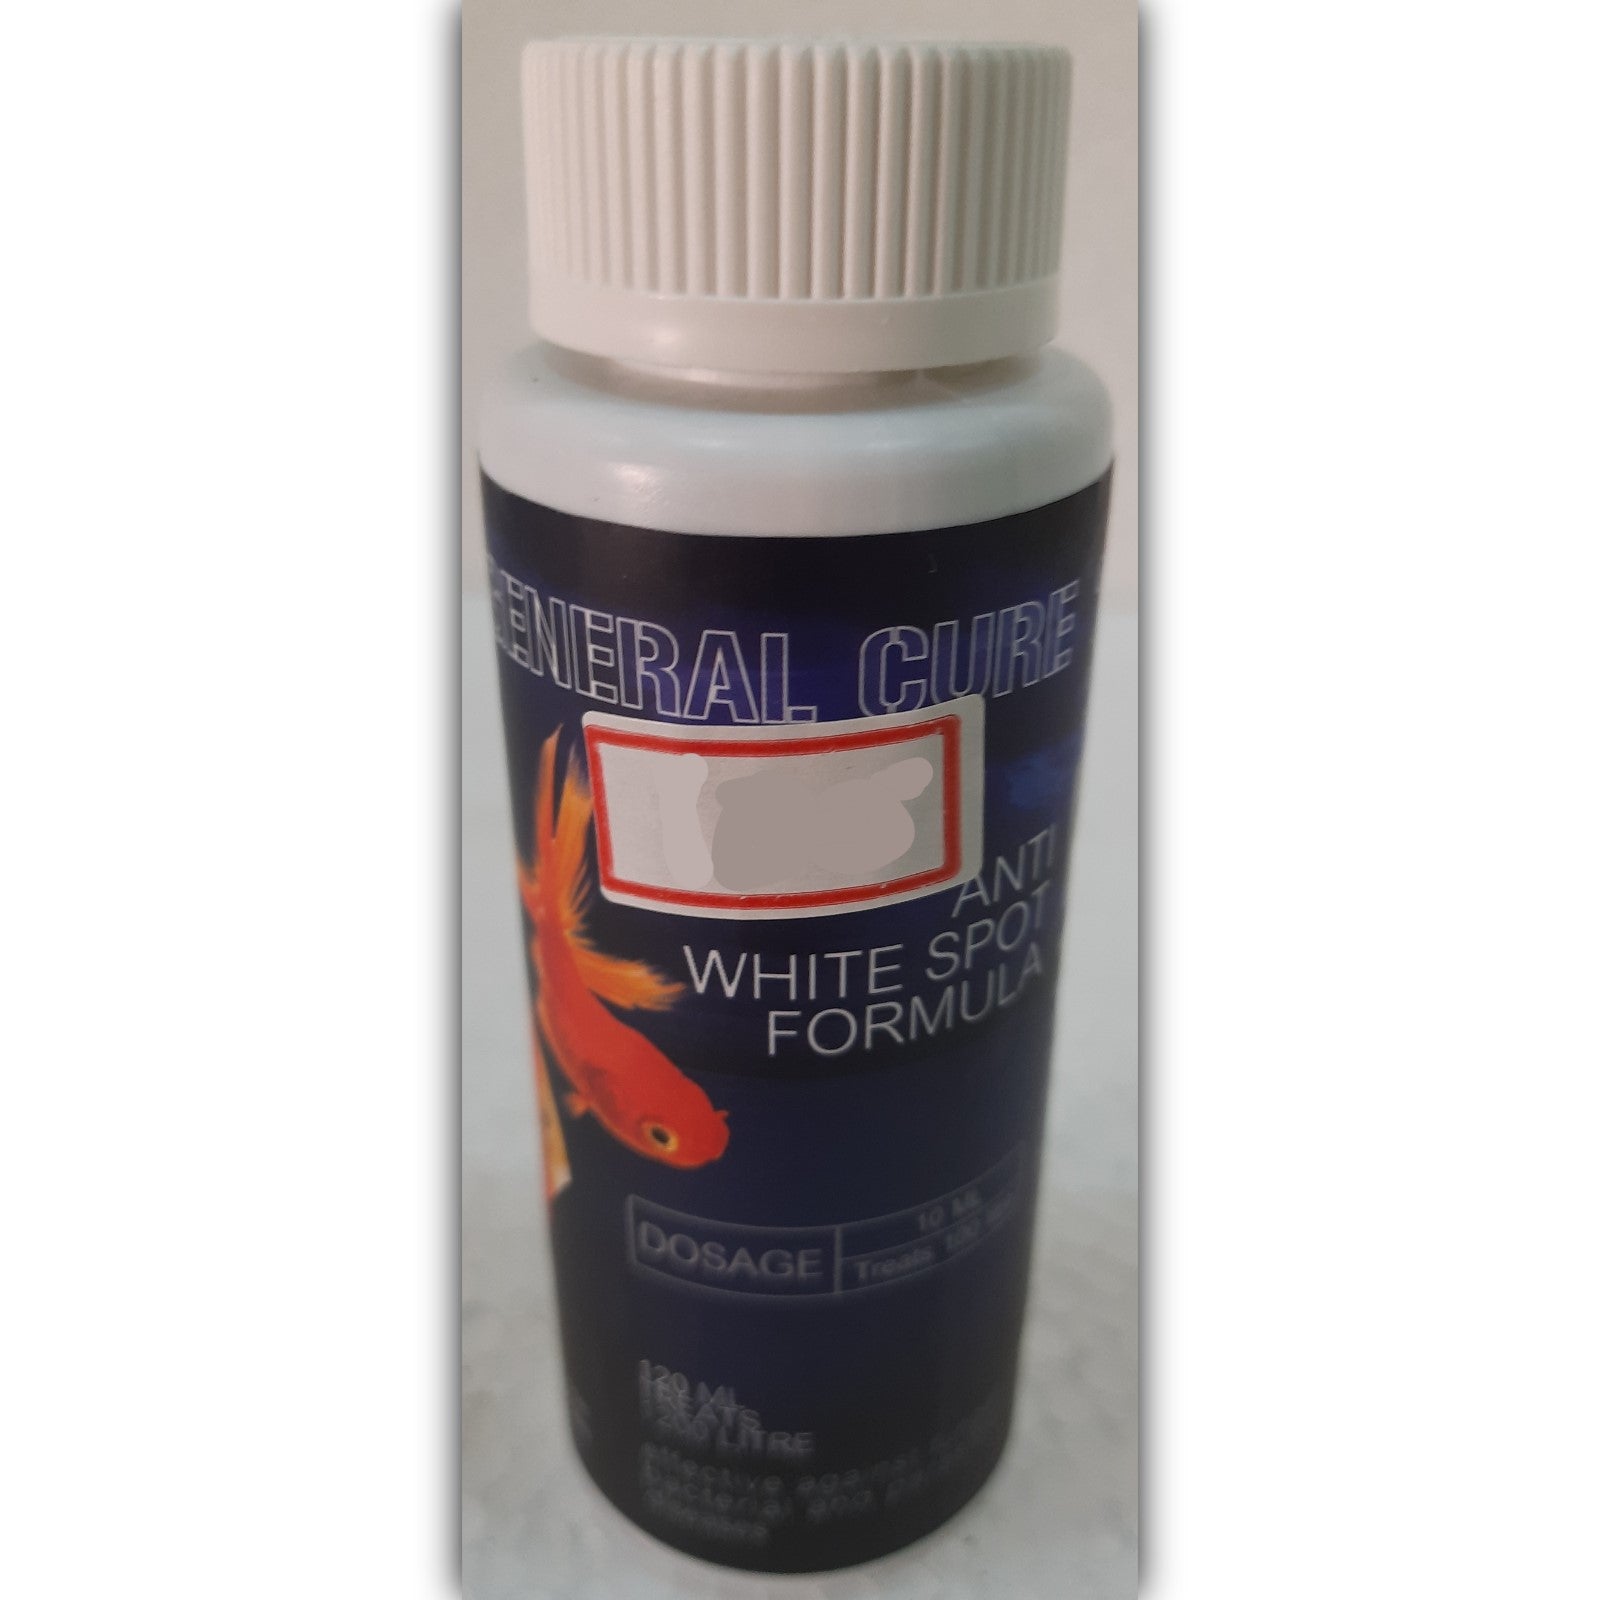 General Cure - Anti White Spot Formula 120 ml